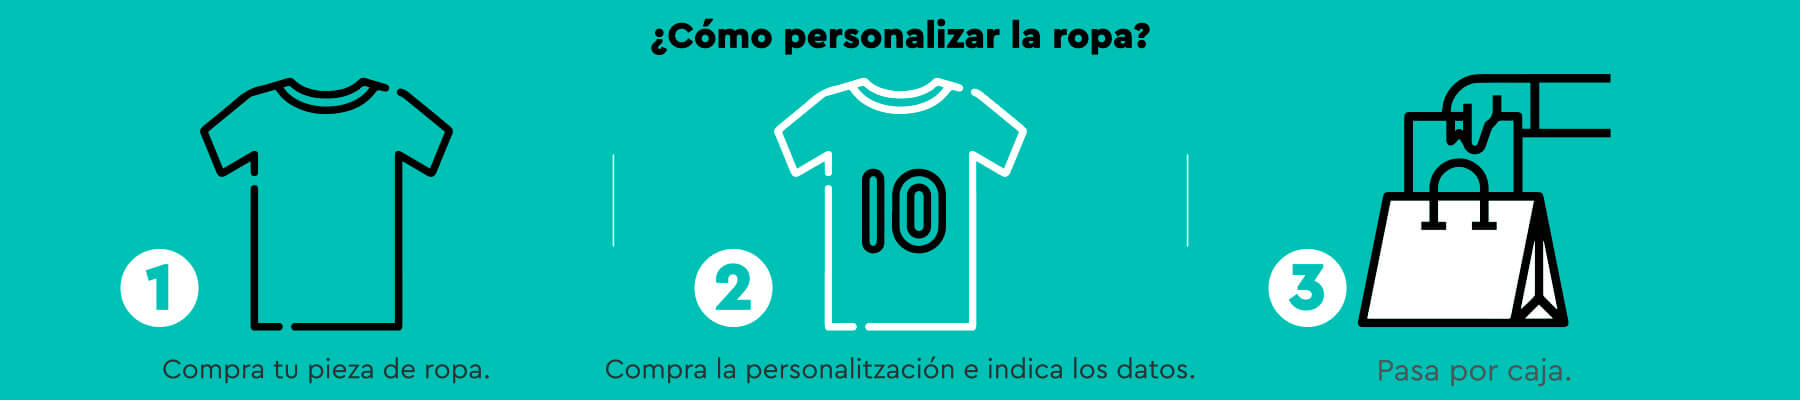 Personalitzar tu ropa es muy fácil. Compra la camiseta que más te guste. Compra la personalización e indica tus datos. Pasa por caja y listo!